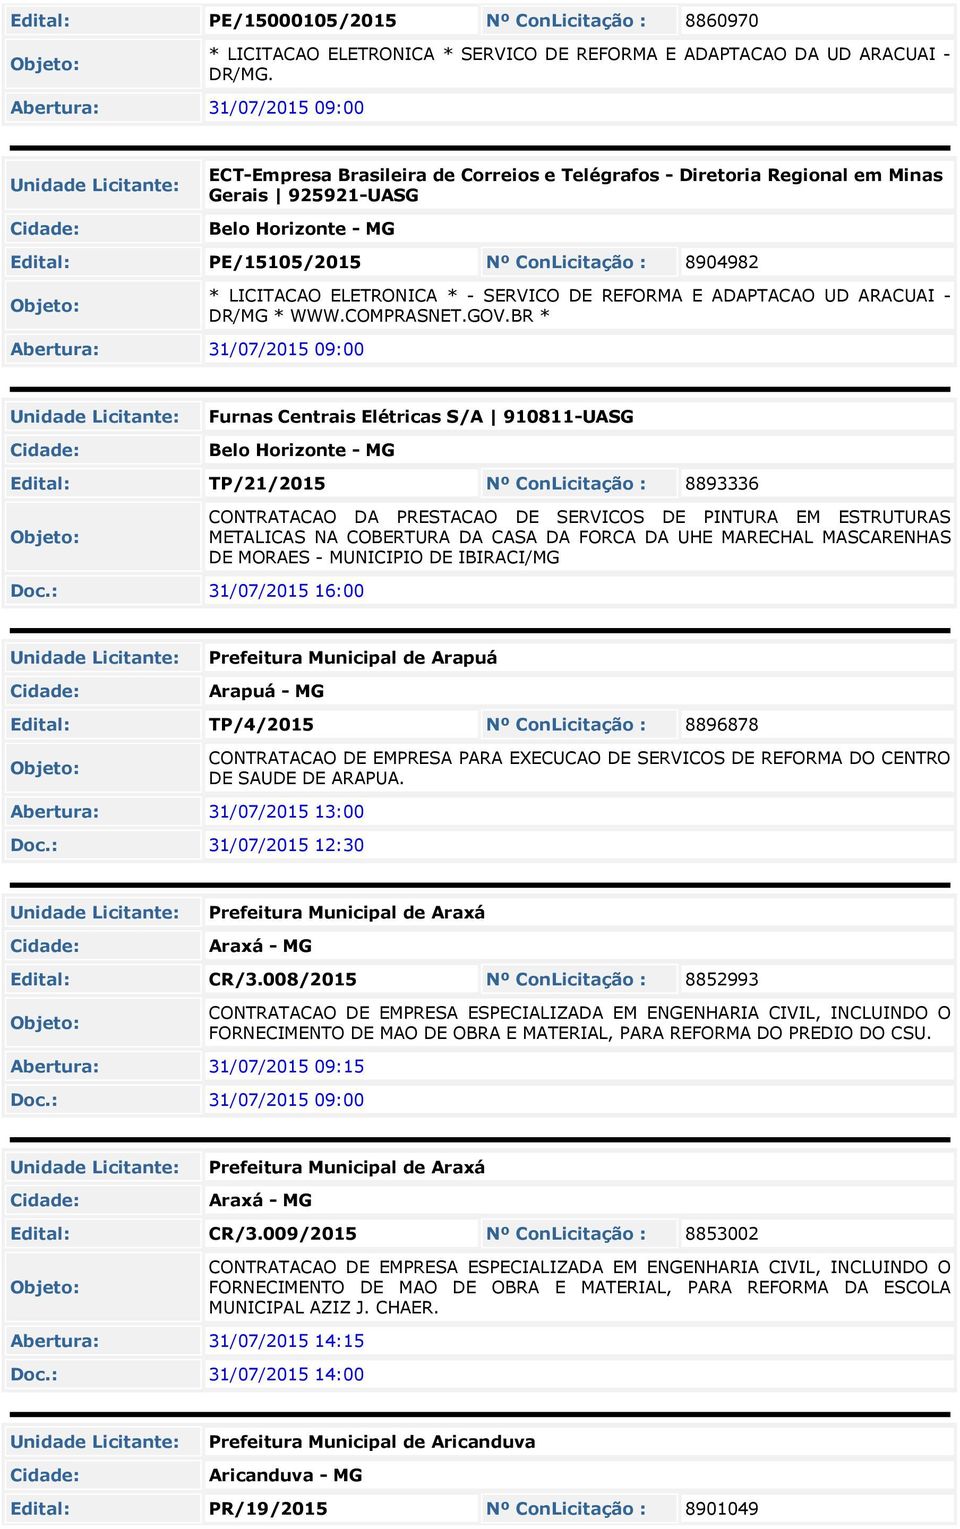 31/07/201 09:00 * LICITACAO ELETRONICA * - SERVICO DE REFORMA E ADAPTACAO UD ARACUAI - DR/MG * WWW.COMPRASNET.GOV.